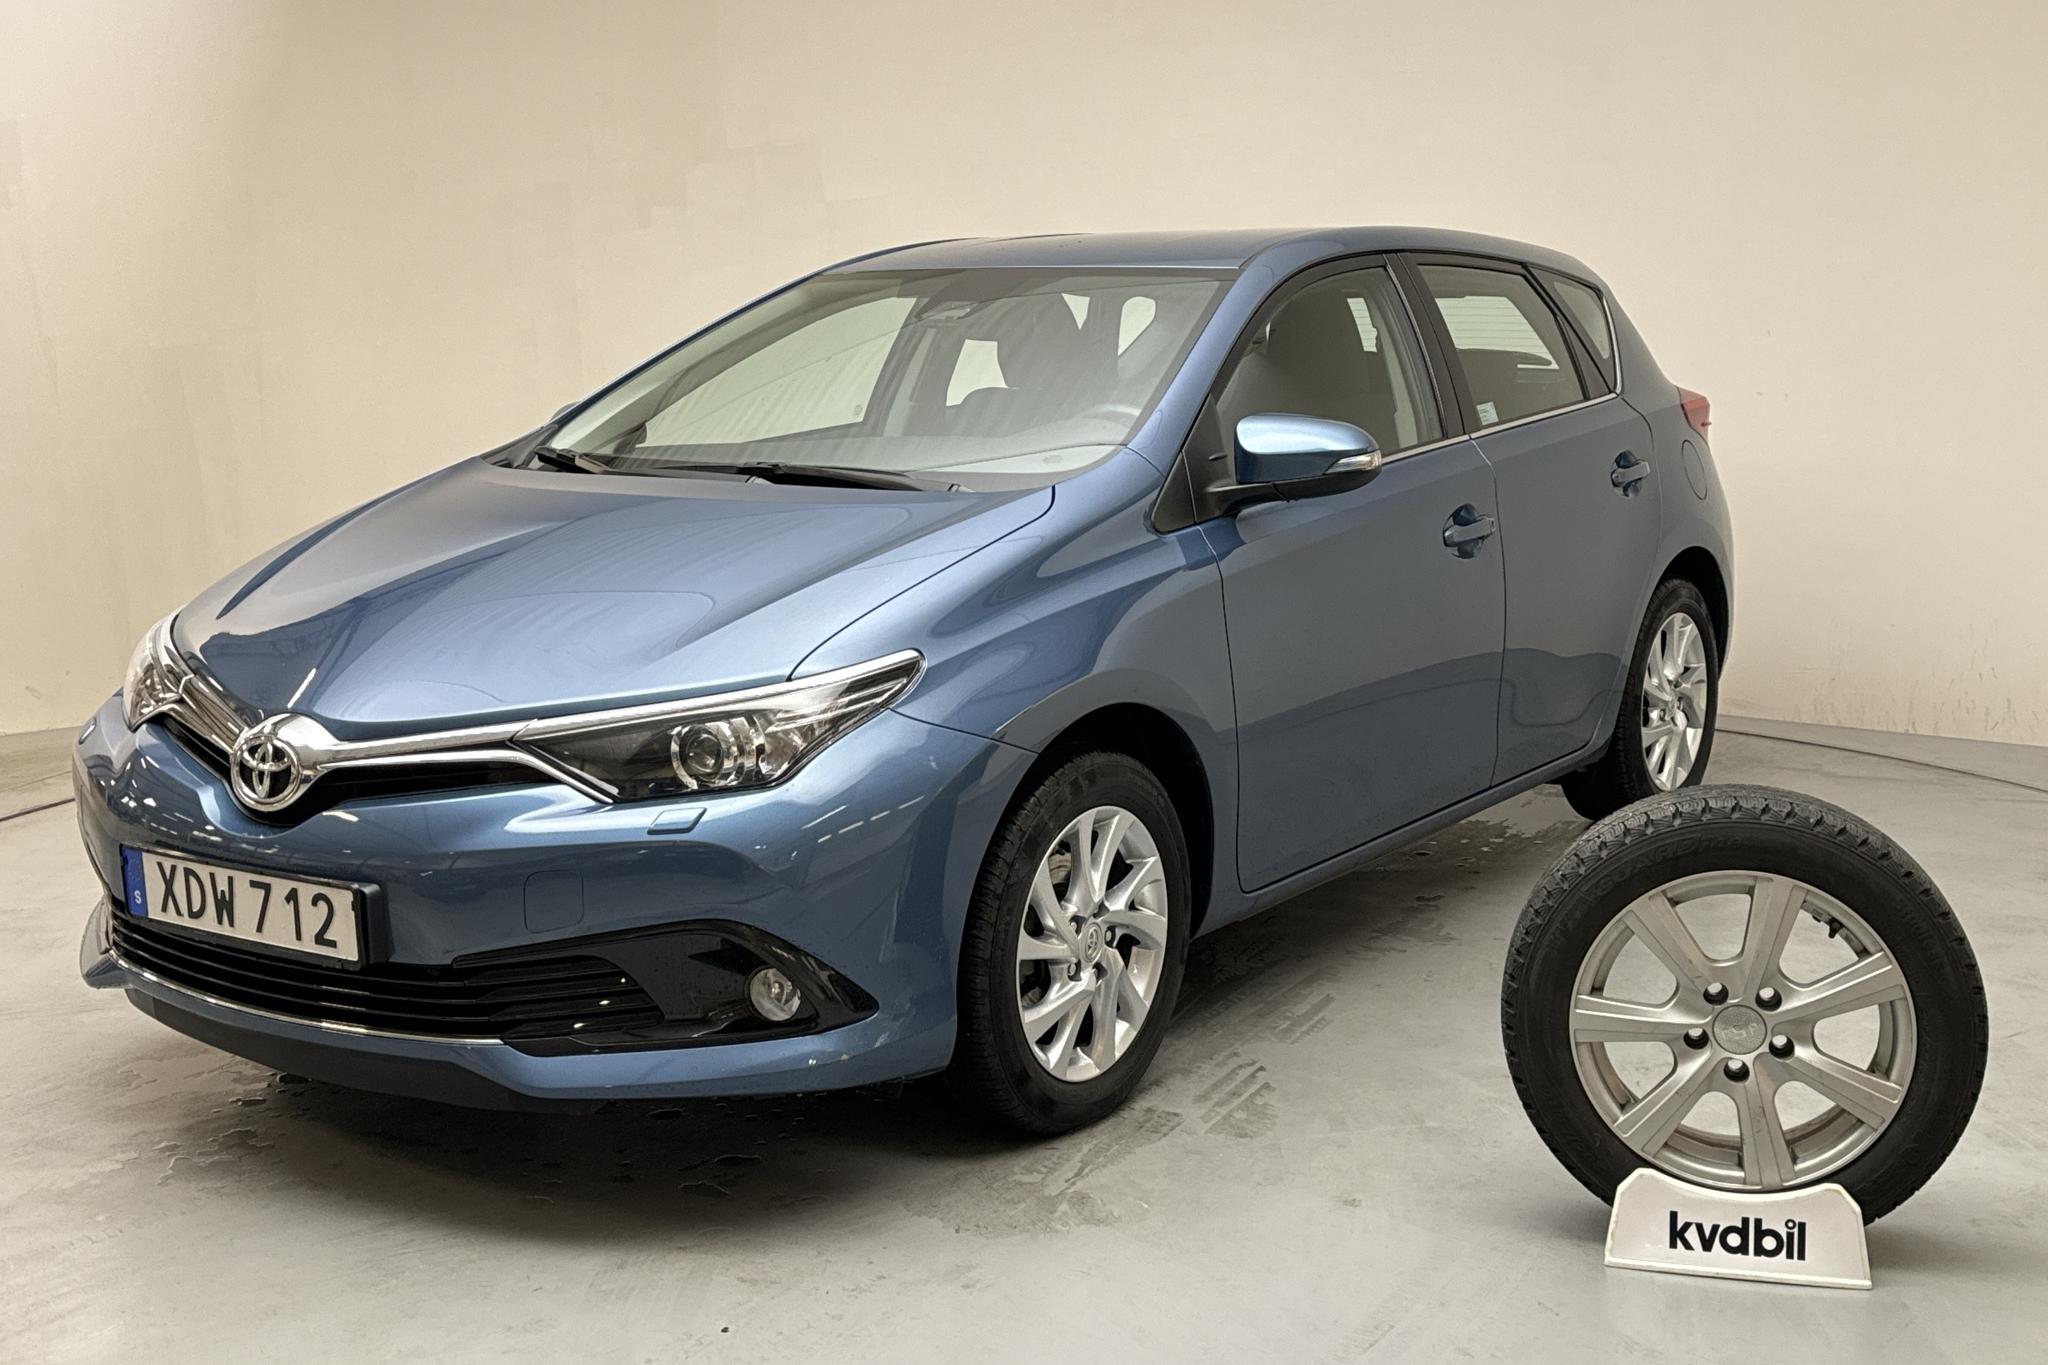 Toyota Auris 1.2T 5dr (116hk) - 30 820 km - Manual - blue - 2016